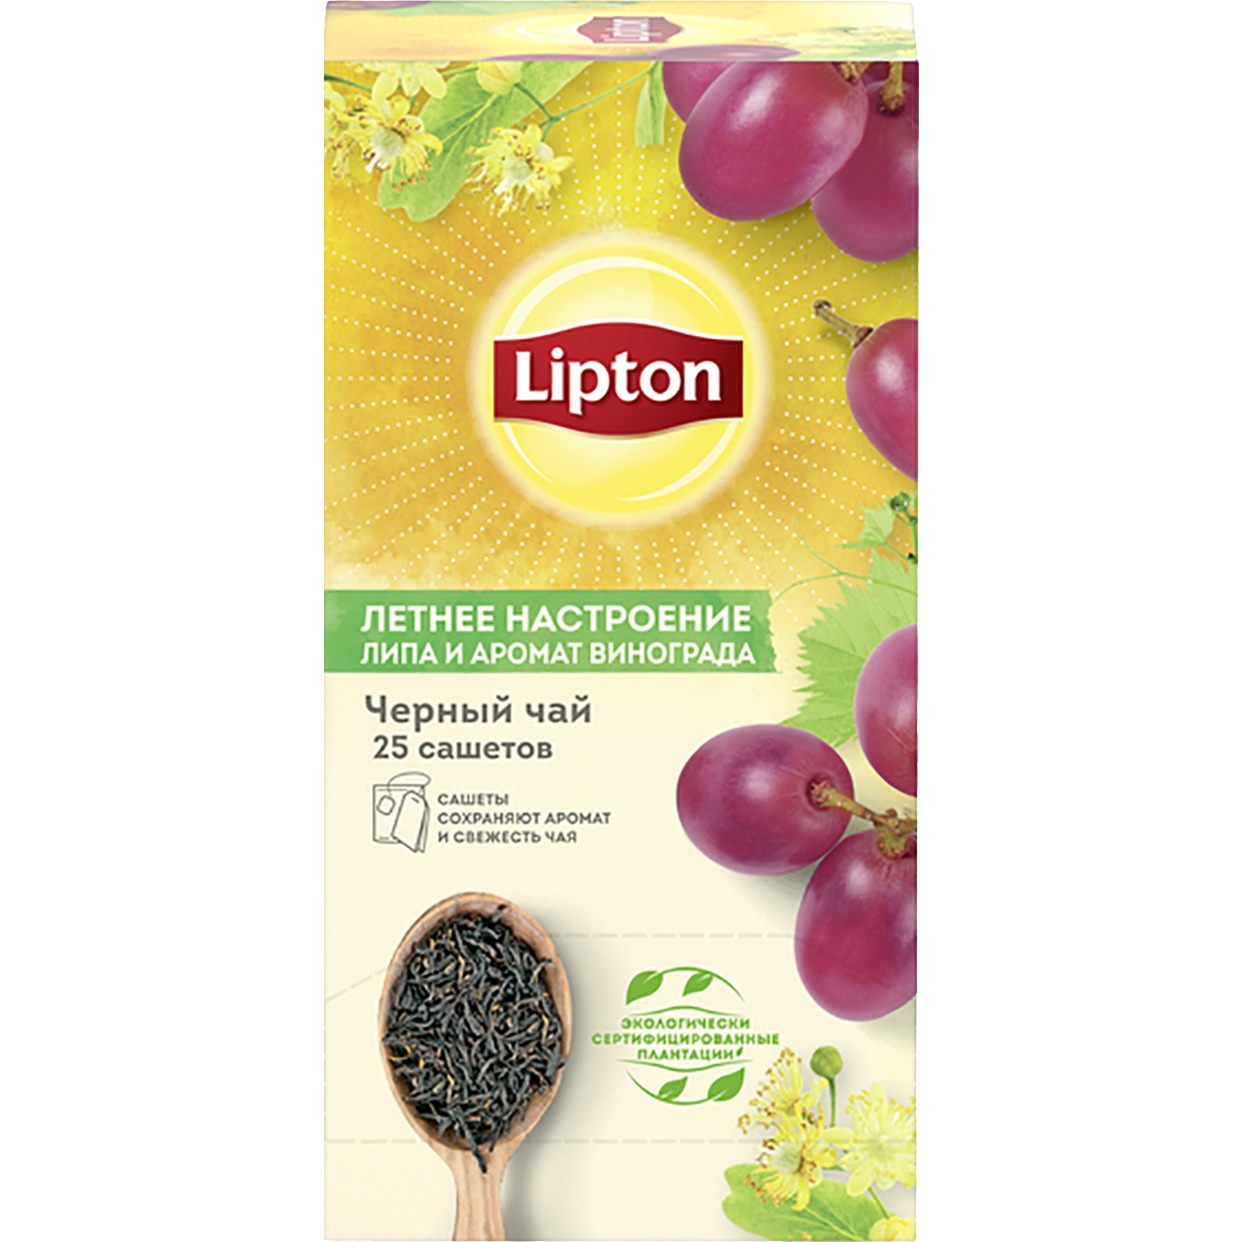 Чай черный Lipton "Летнее настроение" с виноградом и цветами липы 25х1,5, Нетто 37,5Г по акции в Пятерочке